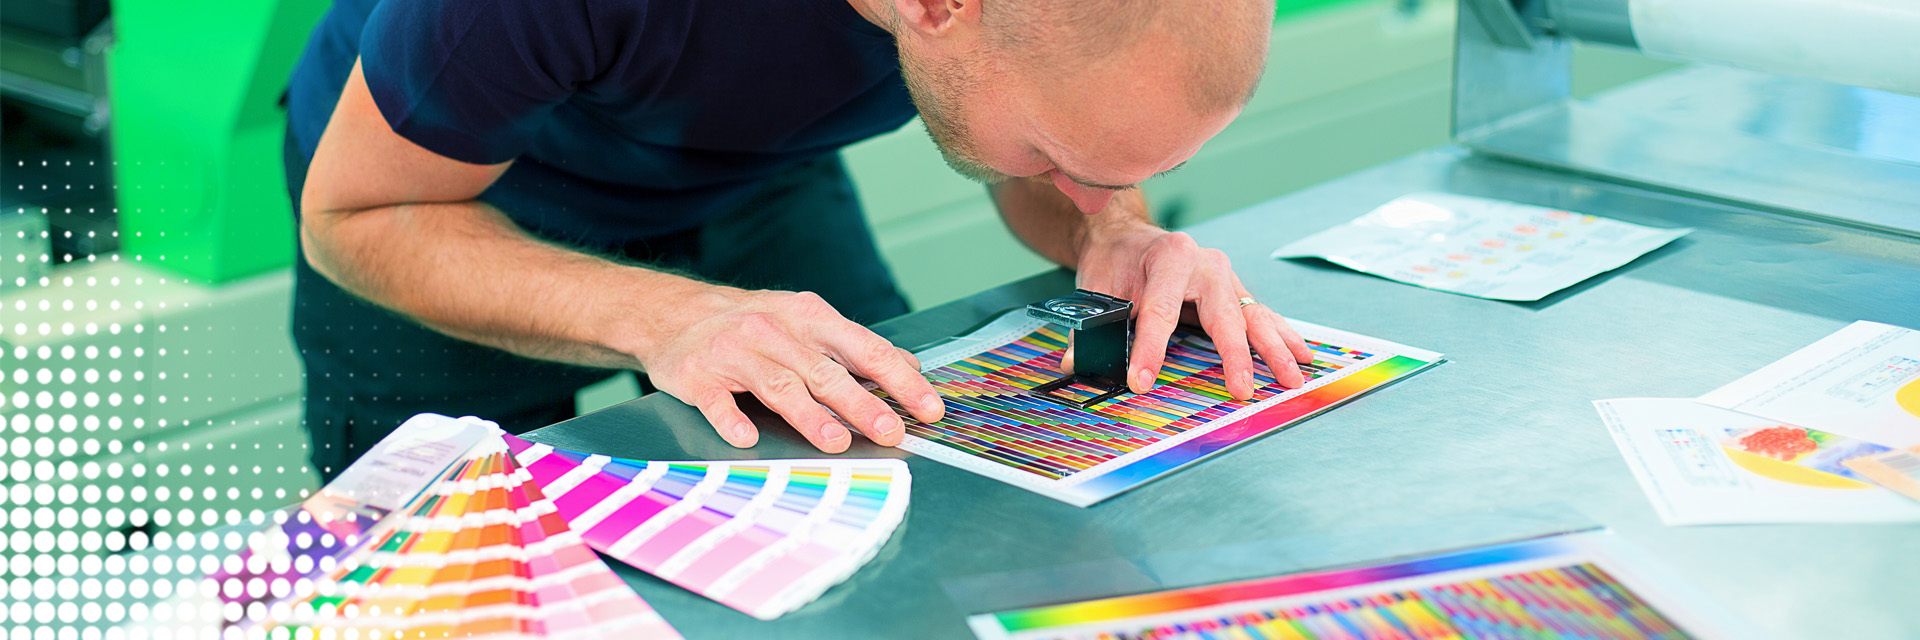 Man bekijkt met een vergrootglas de afdrukkwaliteit en kleuren in de drukkerij